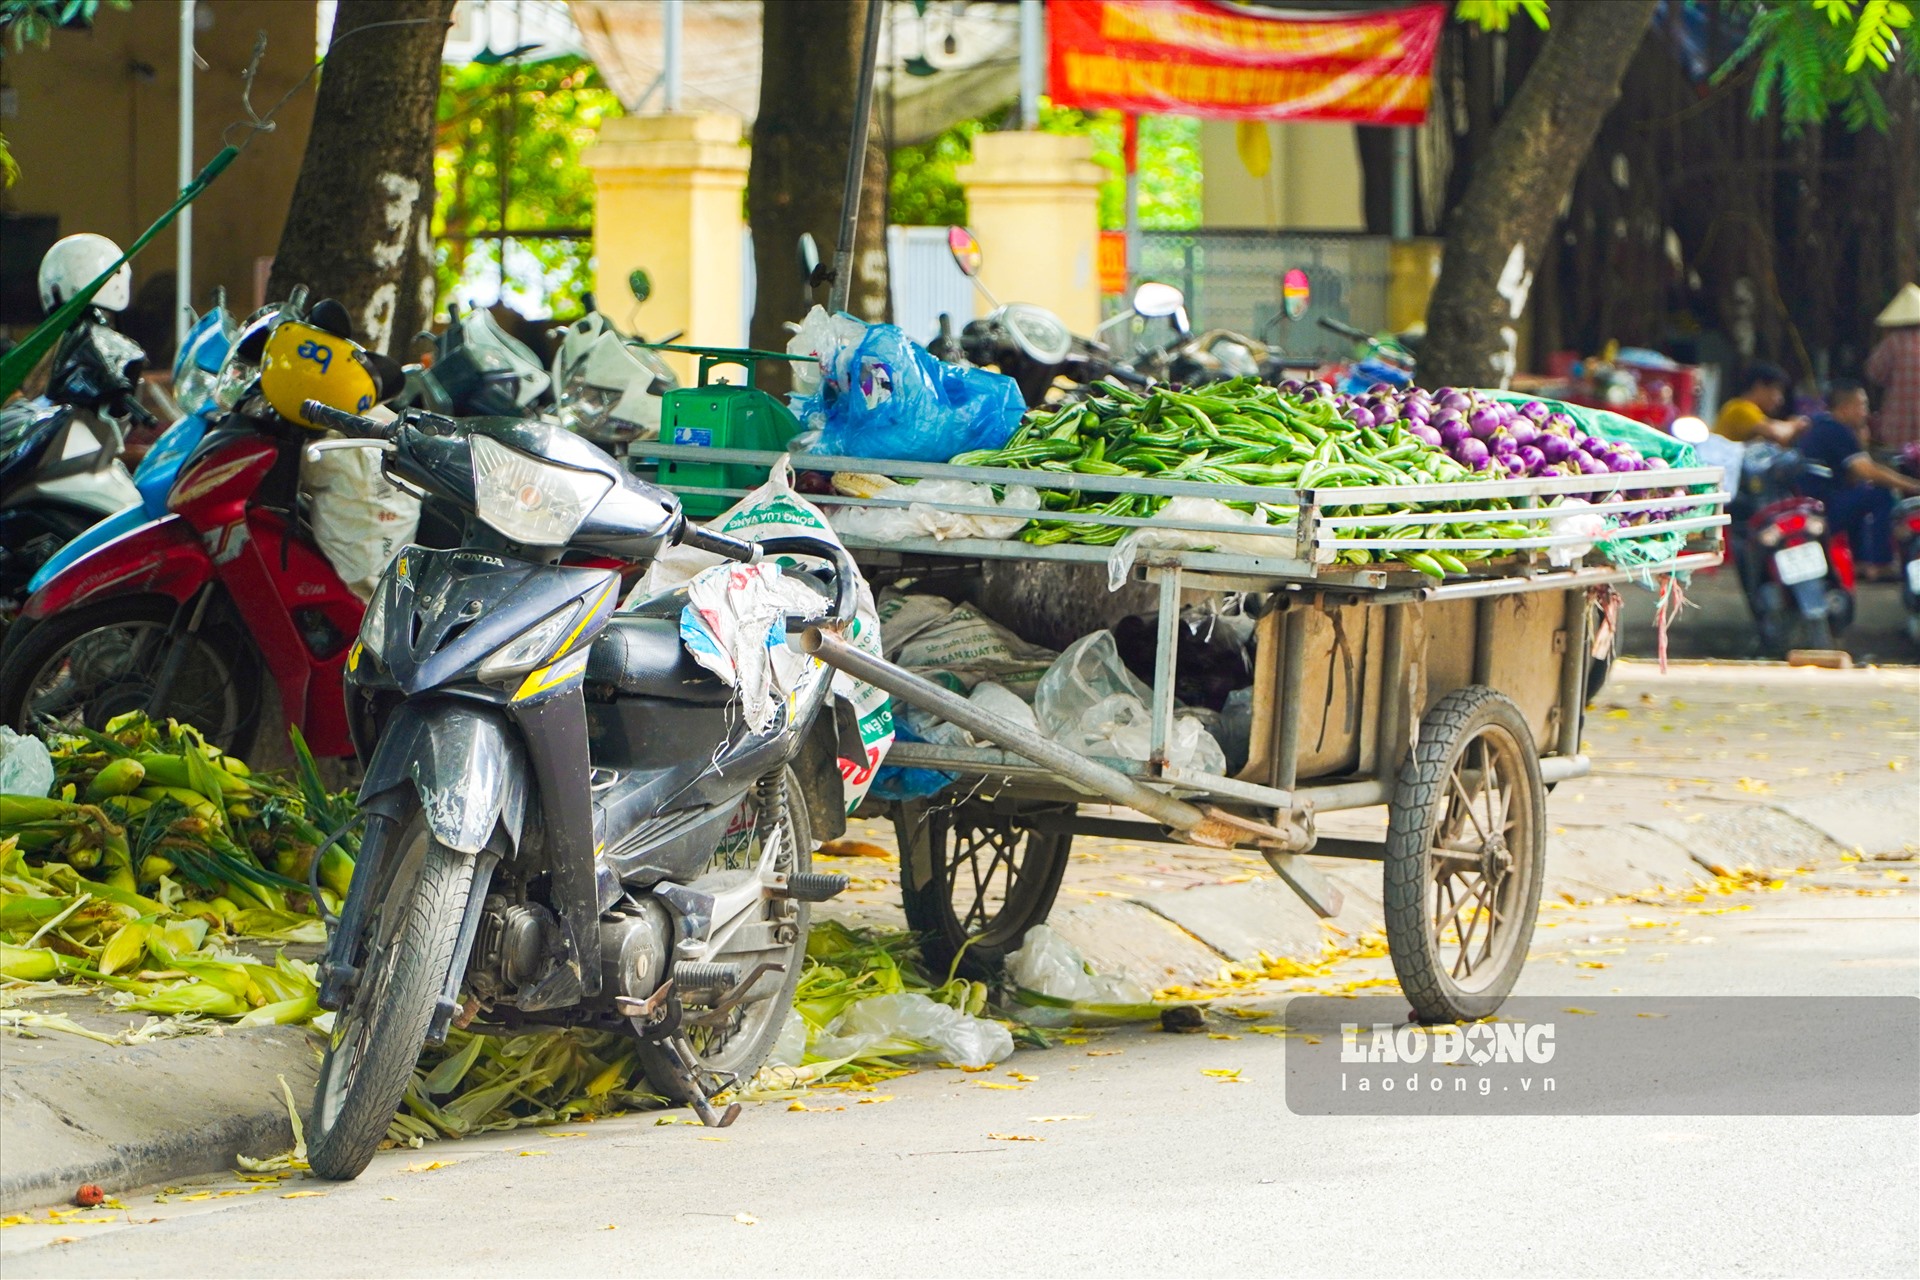 Không chỉ chiếm phần vỉa hè, các xe lưu động bán hoa quả còn ngang nhiên chiếm dụng cả phần lòng đường.